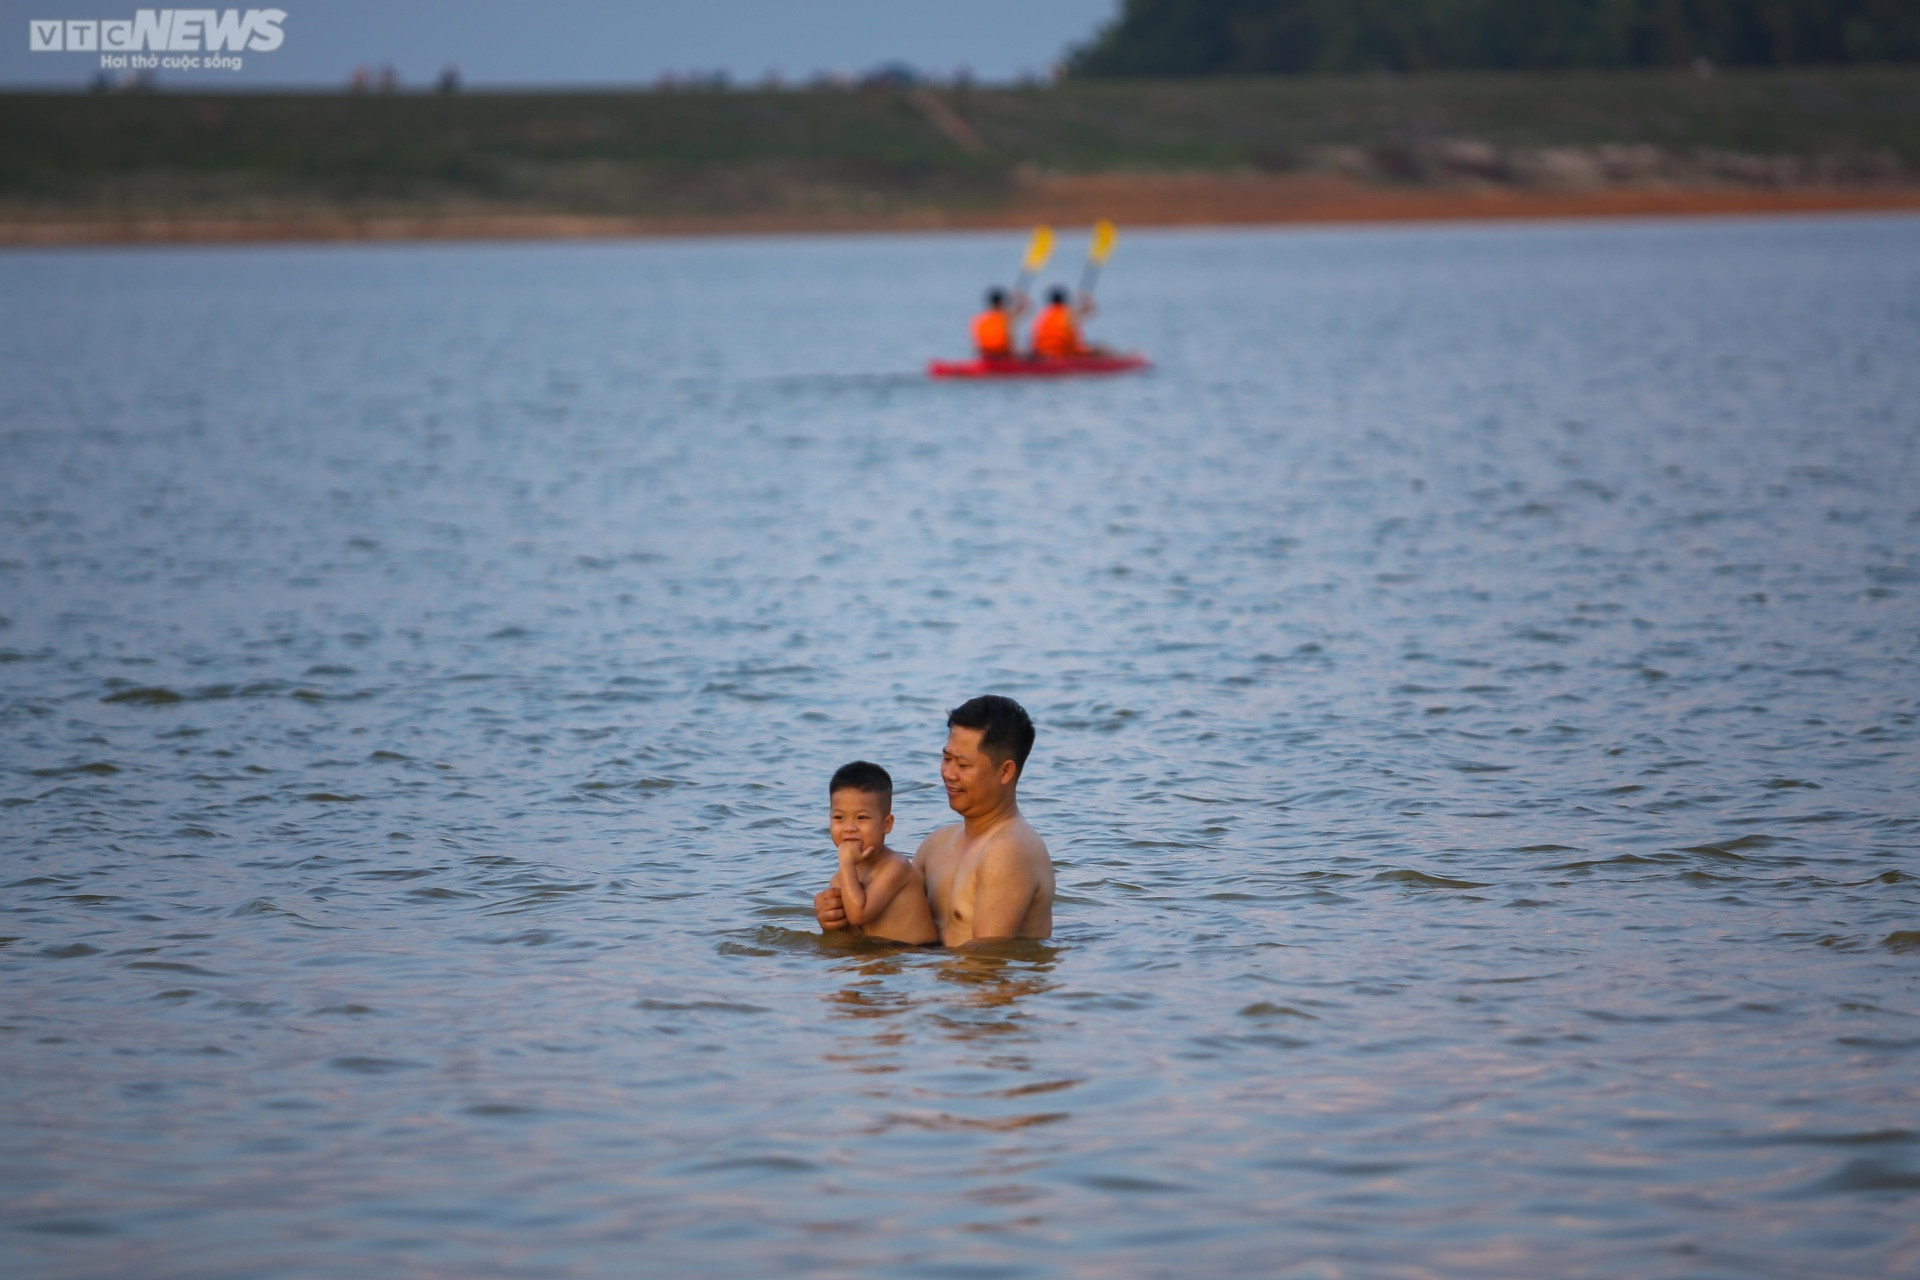 Chiều hè đổ lửa, người dân Hà Nội tìm sông hồ giải nhiệt - 6